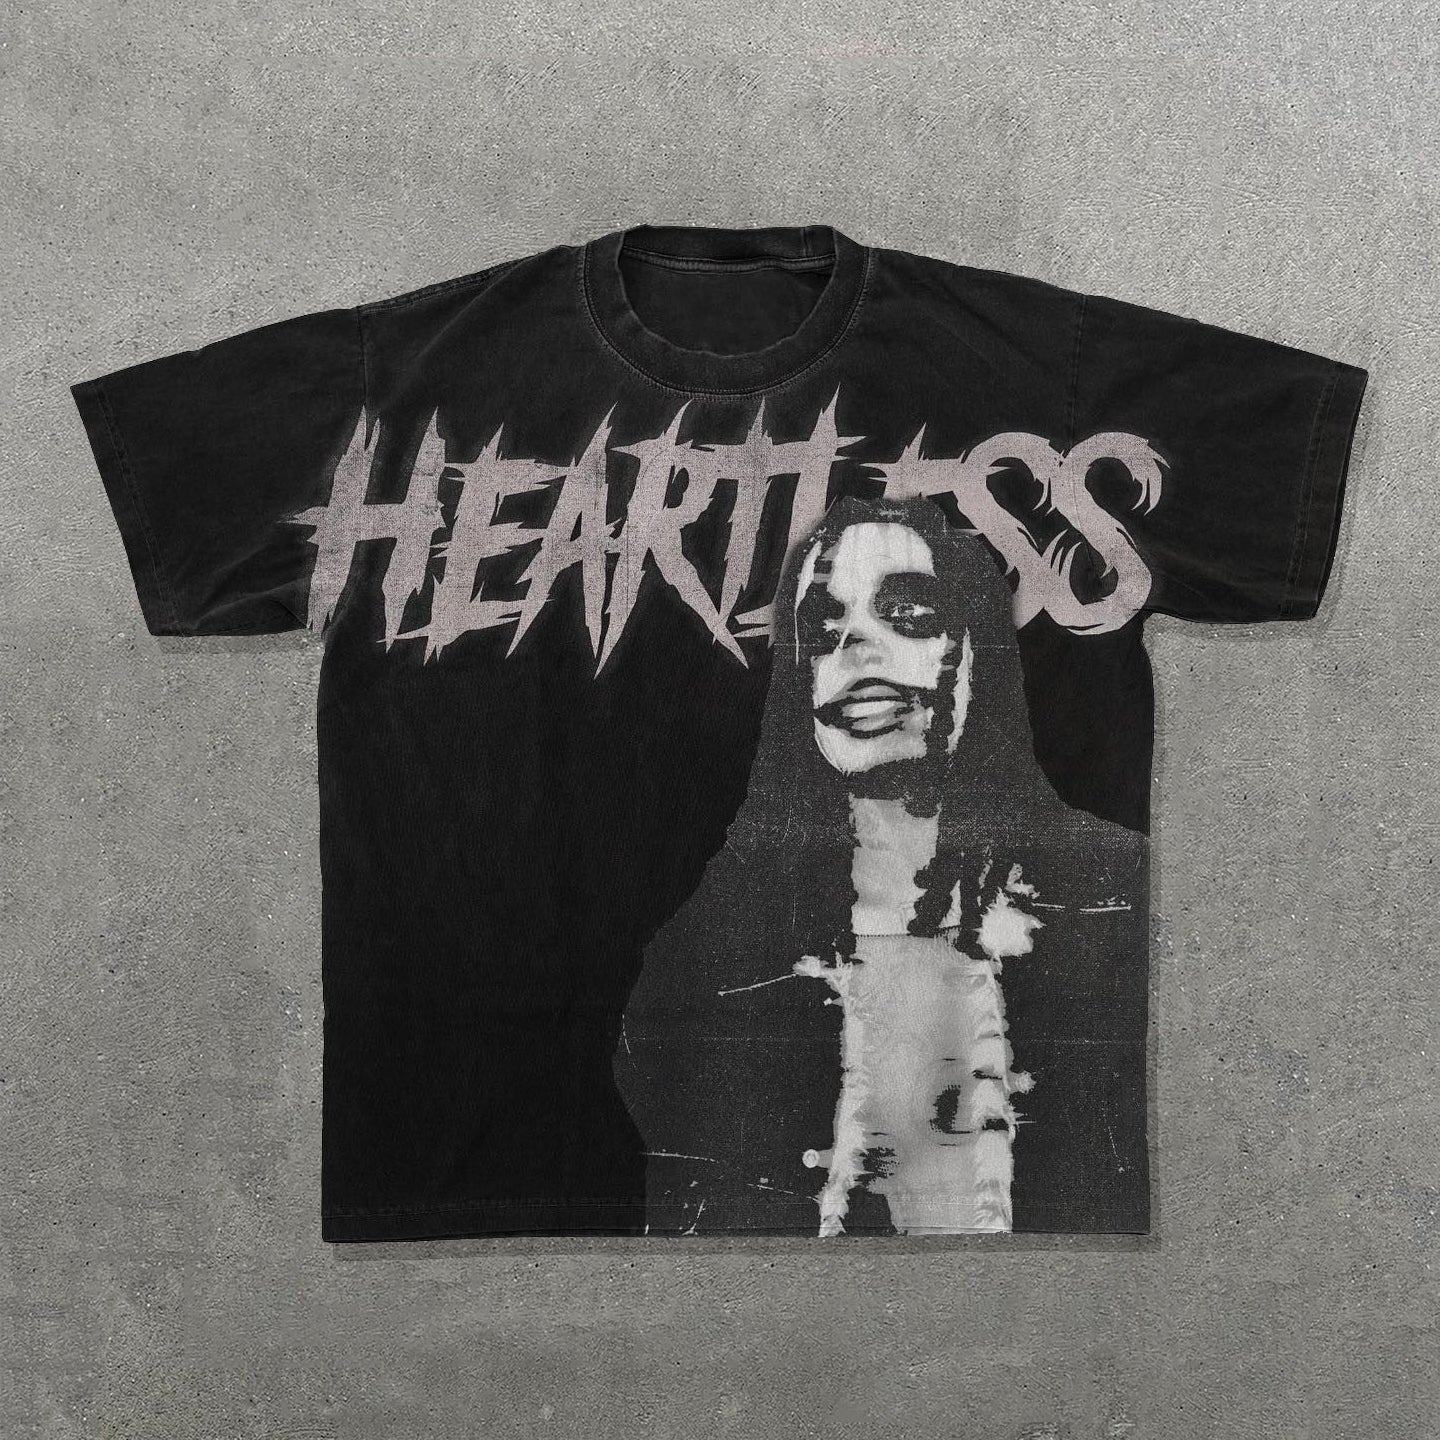 Heartless Print Short Sleeve T-Shirt